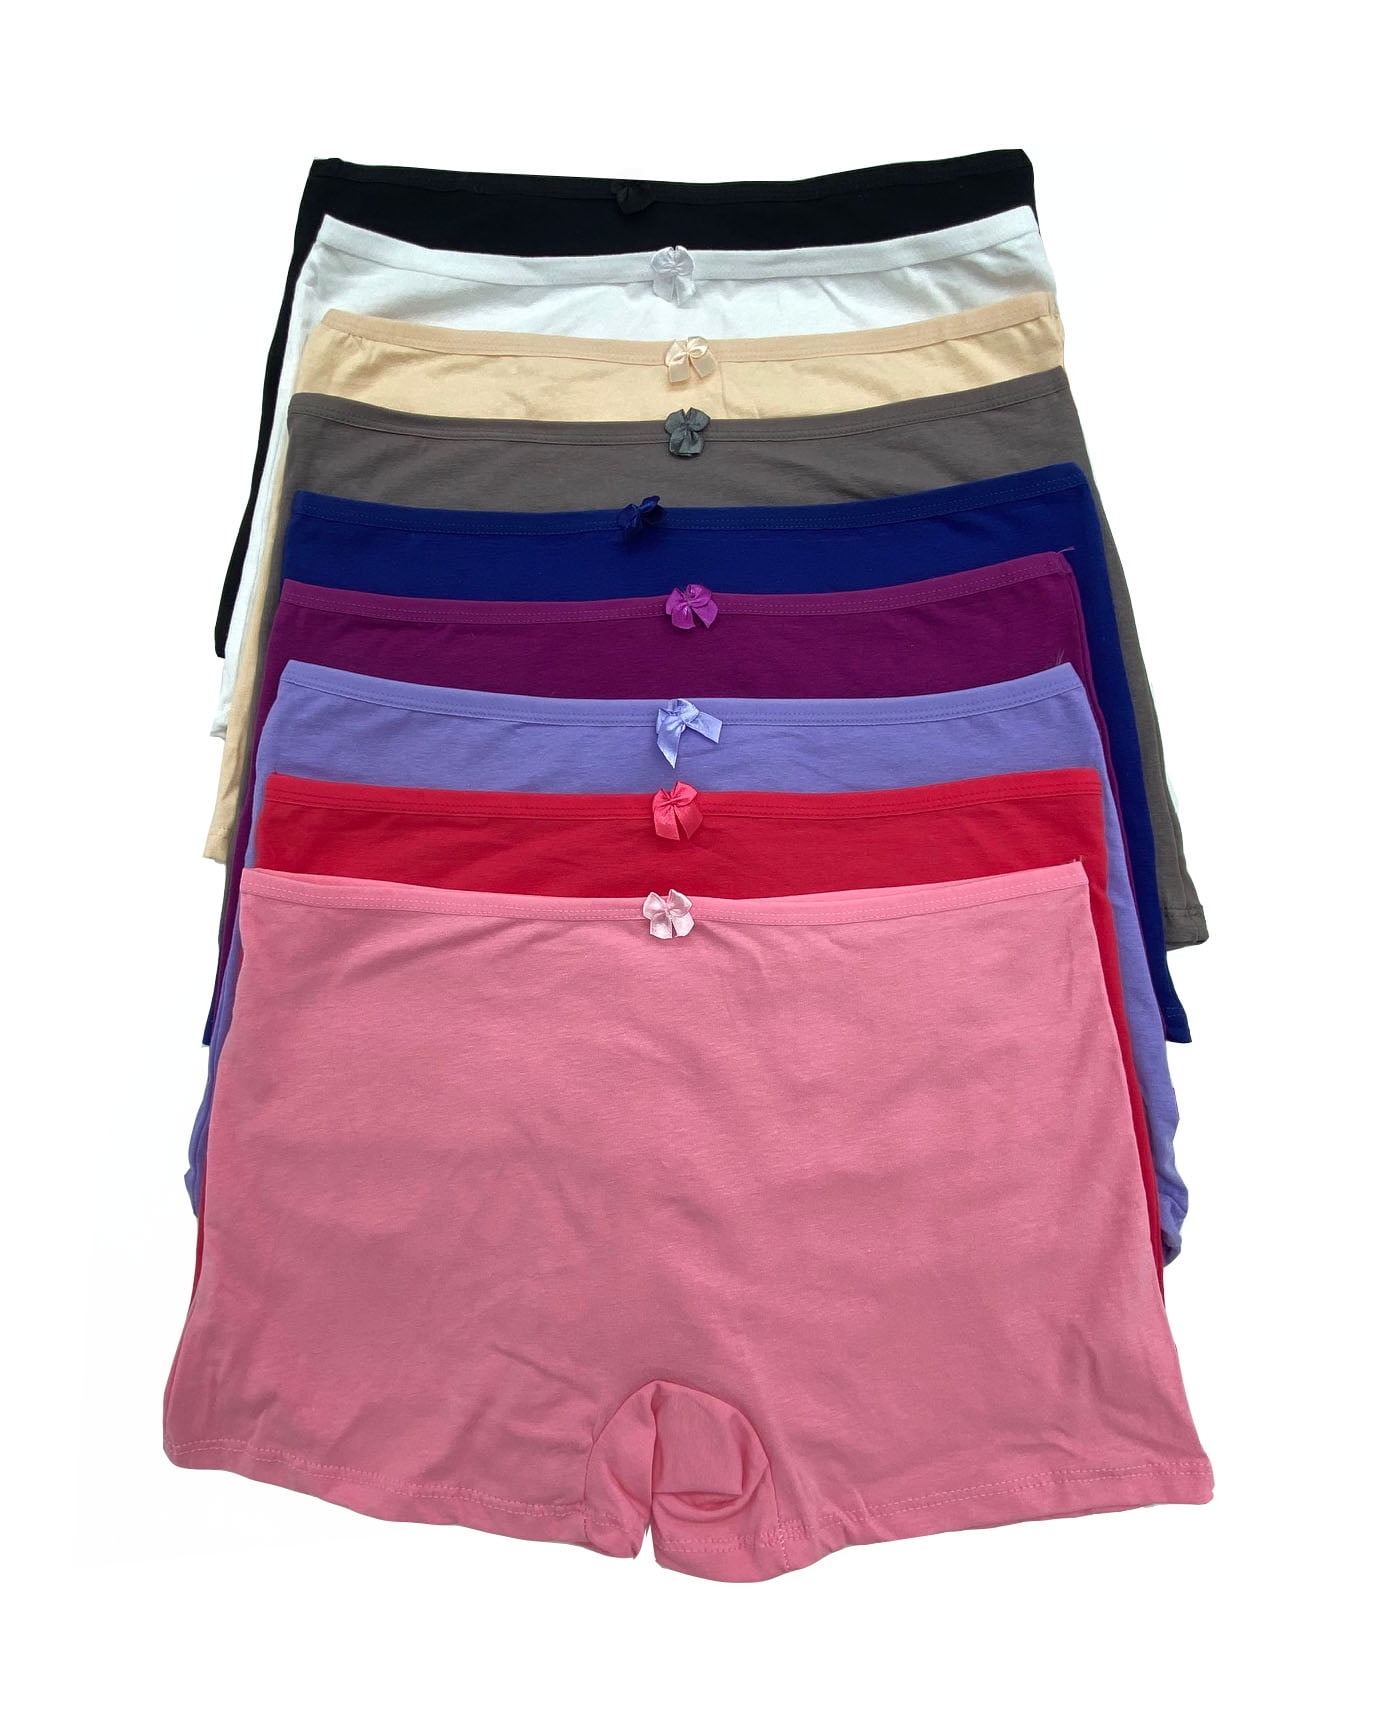 Women Panties Cotton Underwear Plus Size Brief 4XL (10063) 